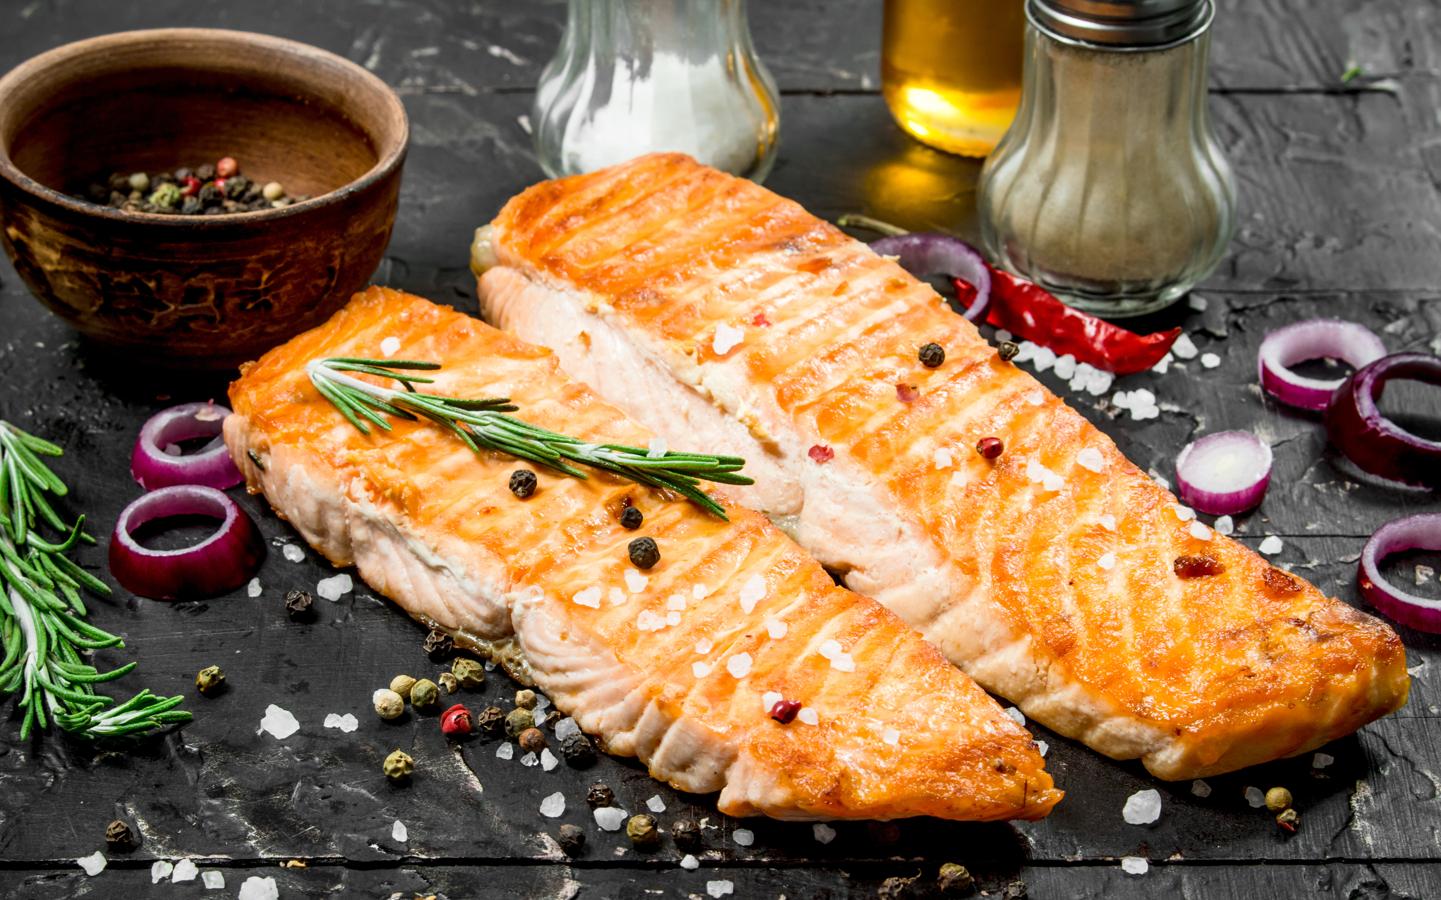 Salmón. El <a href="https://www.abc.es/bienestar/alimentacion/recetas-saludables/abci-beneficios-salmon-ahumado-y-tres-recetas-ligeras-201912230124_noticia.html" target="_blank">salmón </a>aporta un alto porcentaje de omega 3, una grasa saludable que se sabe que ayuda a la buena formulación de la piel.